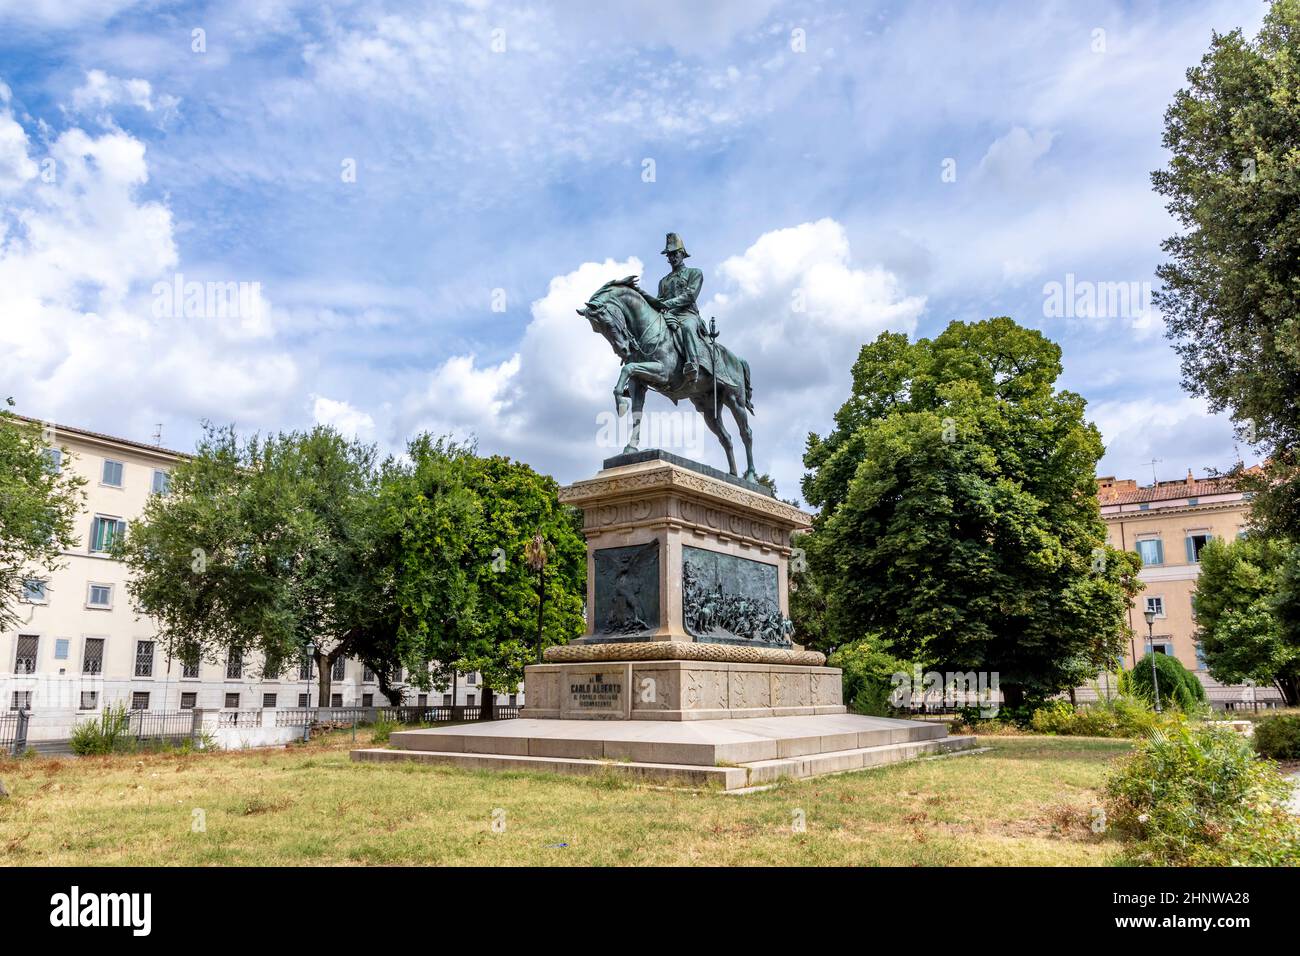 public park Giardino in Rome with rider statue of  Carlo Alberto In Rome, Italy Stock Photo